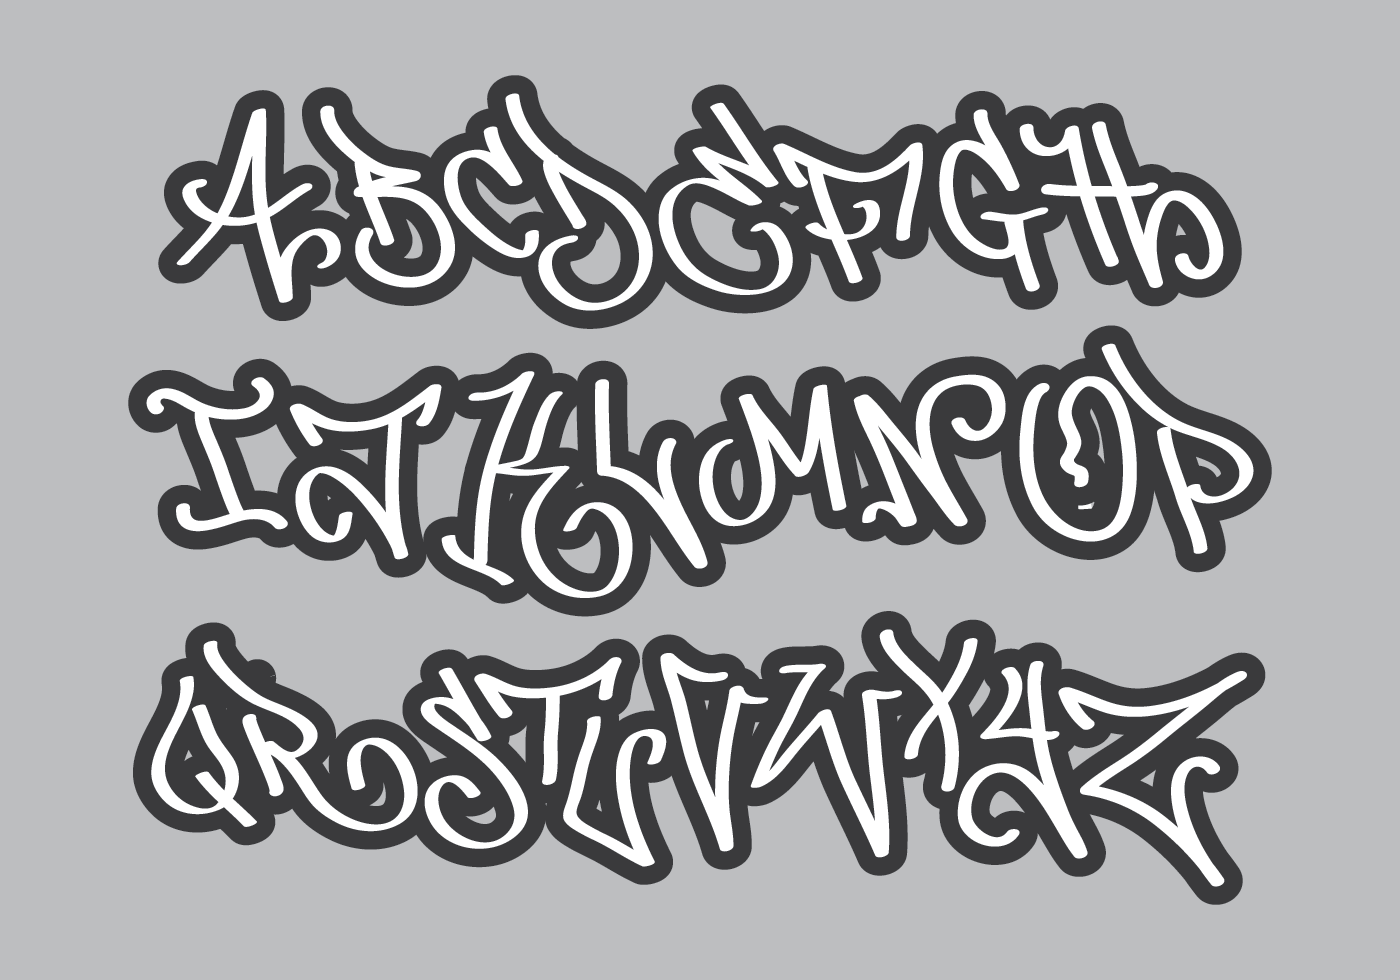 Alfabeto Grafiti Download Vetores Gratis Desenhos De Vetor Modelos E Clipart Tudo sobre alfabetos e letras em prol da educação. alfabeto grafiti download vetores